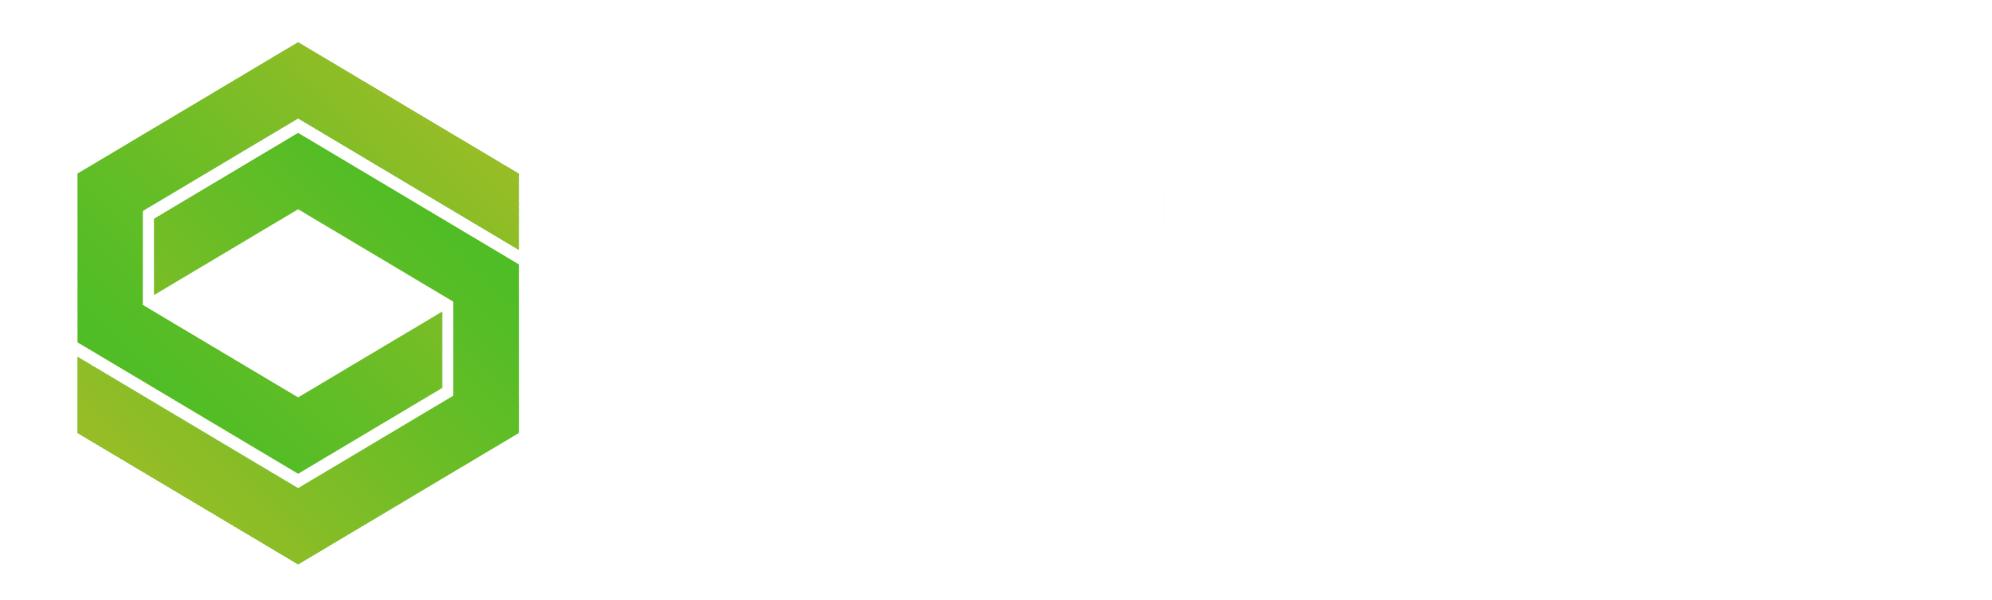 Warzone Loadout Logotipo